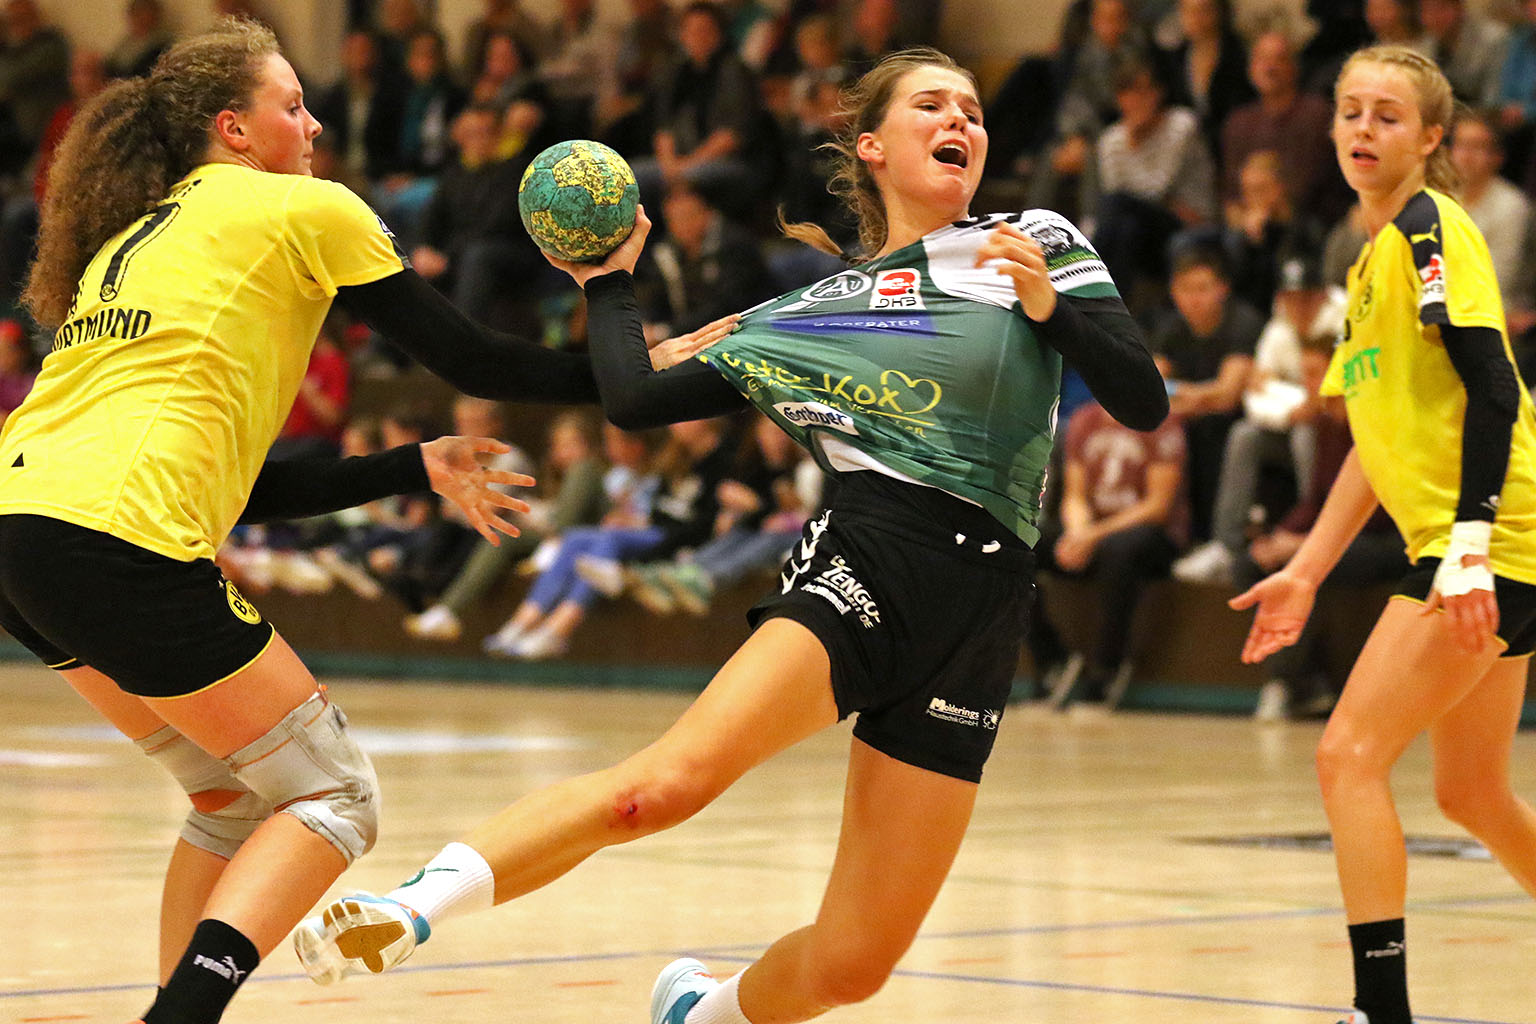 Handballerin Svenja Rottwinkel setzt sich gegen zwei Gegenspielerinnen durch